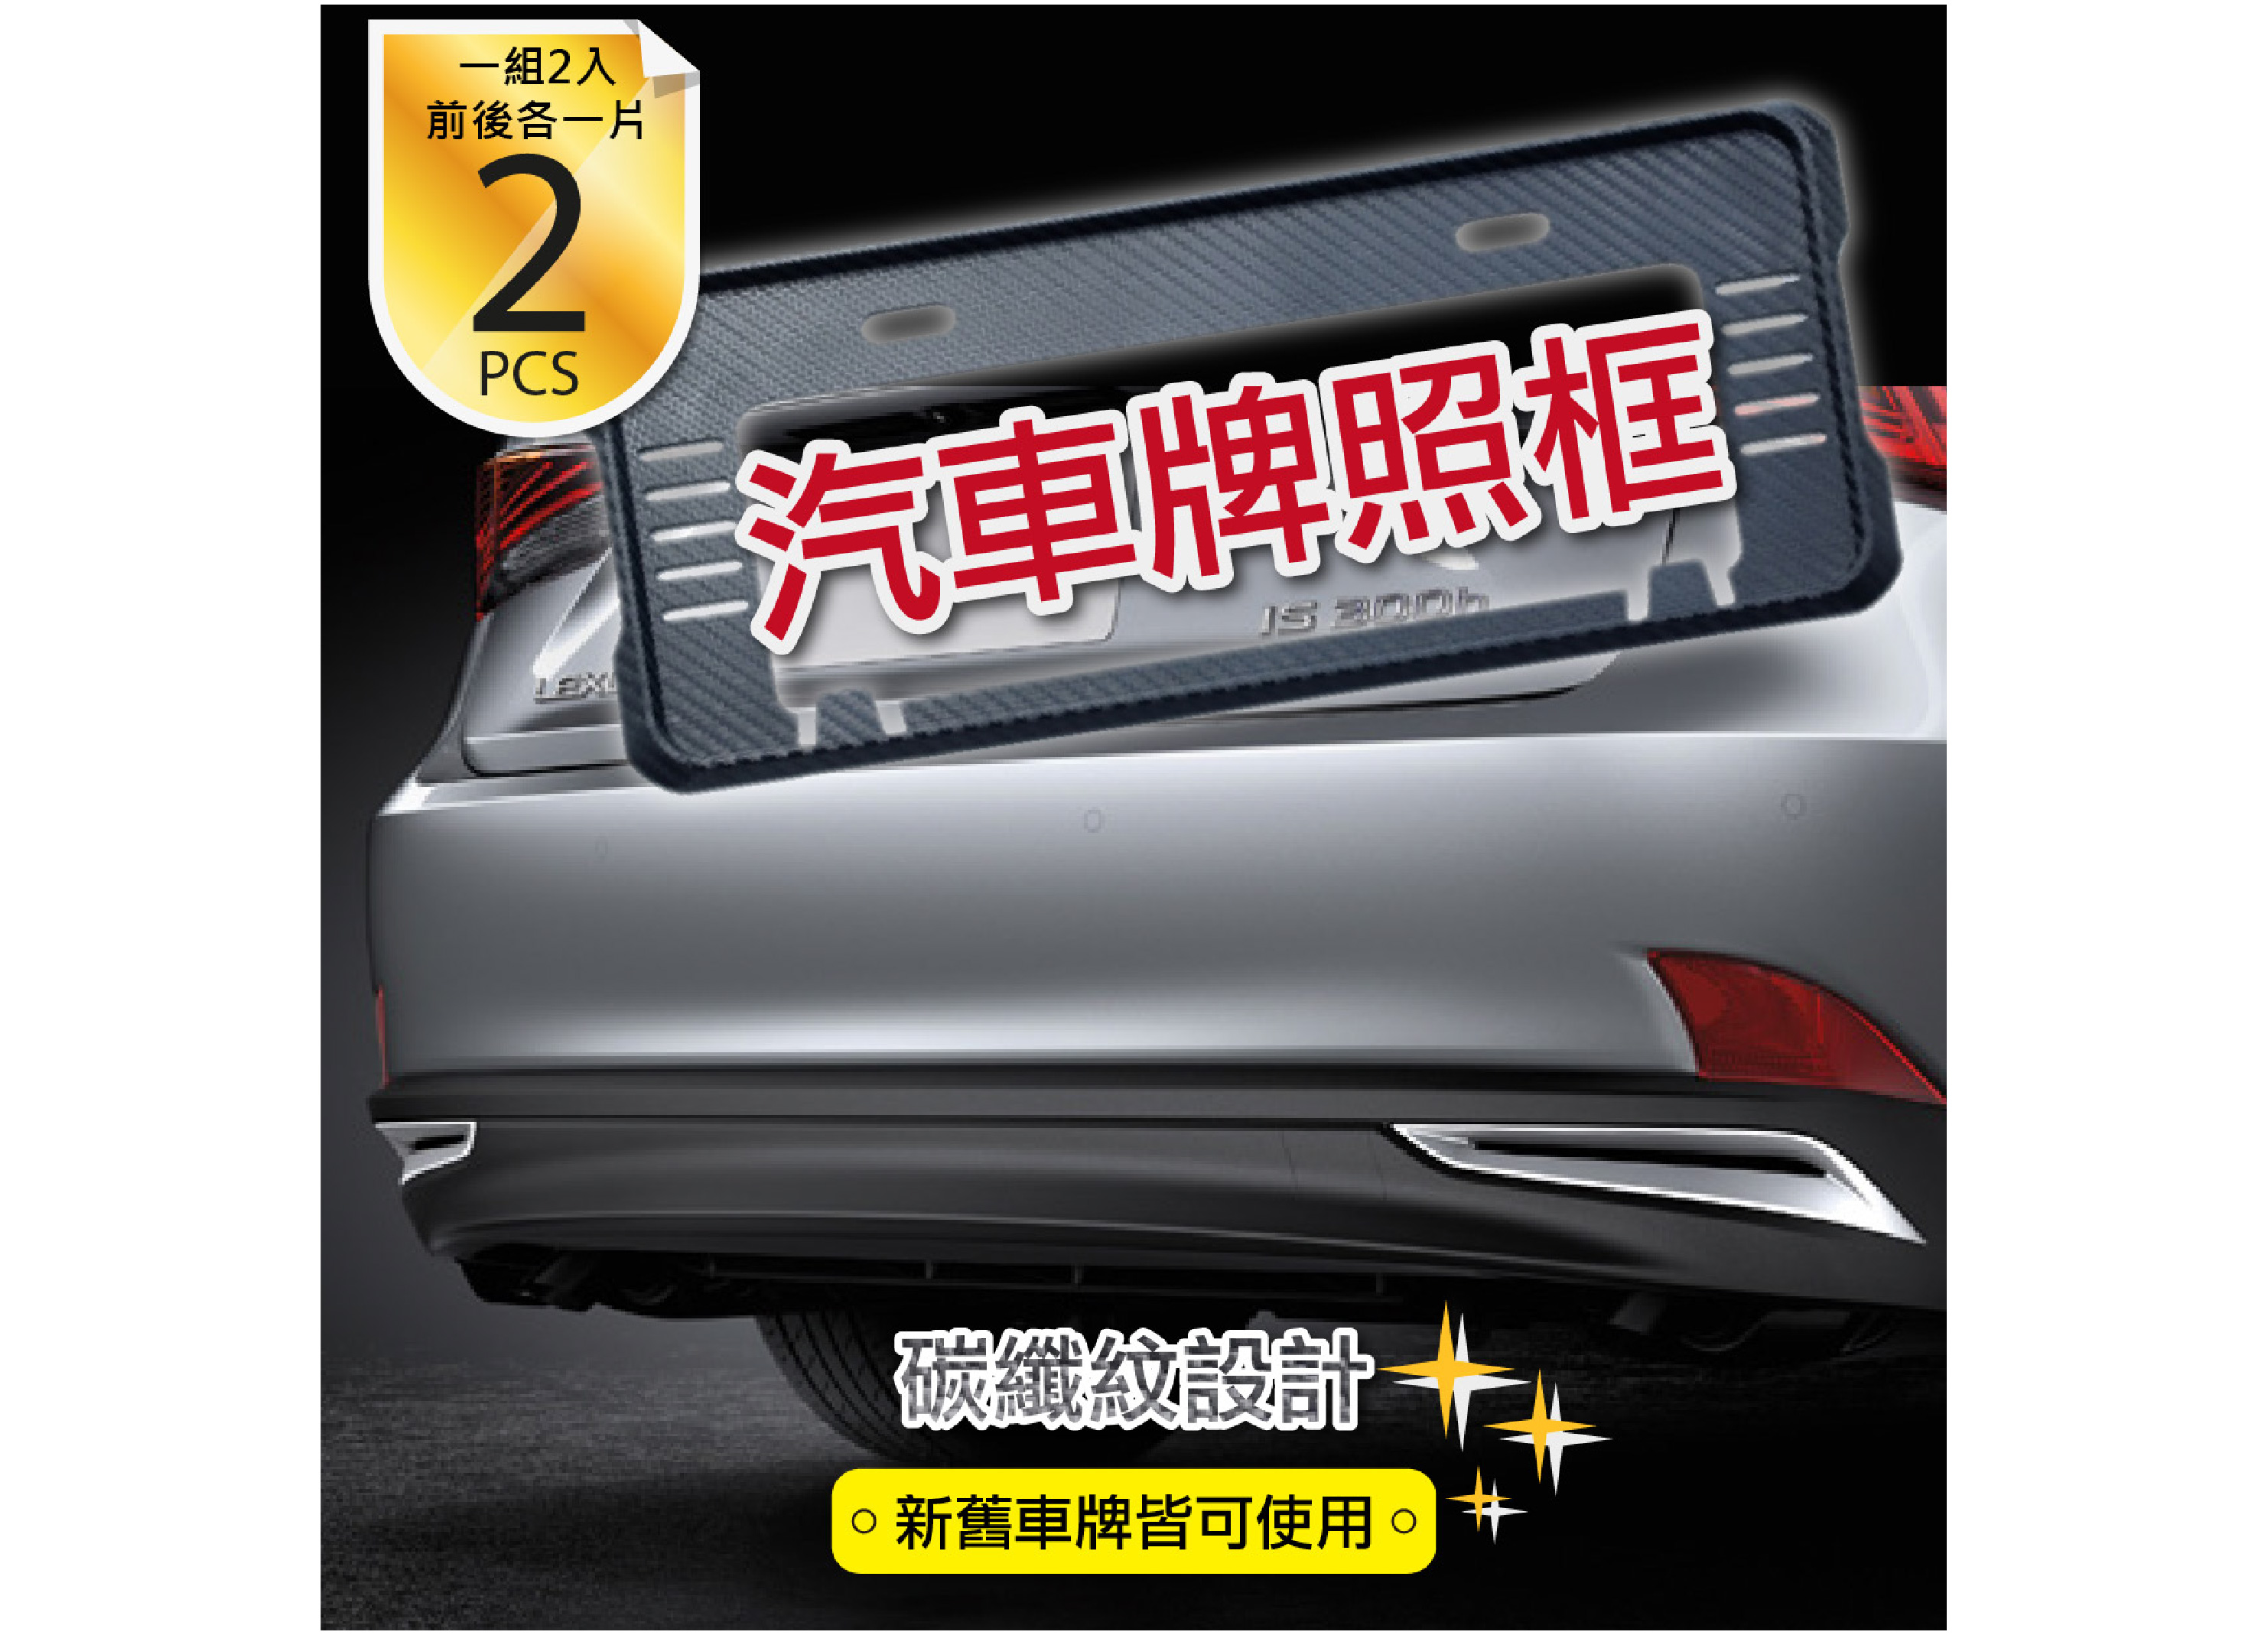 【汽車牌照框】碳纖紋 CARBON 裝飾 新舊車牌皆可使用 2入裝